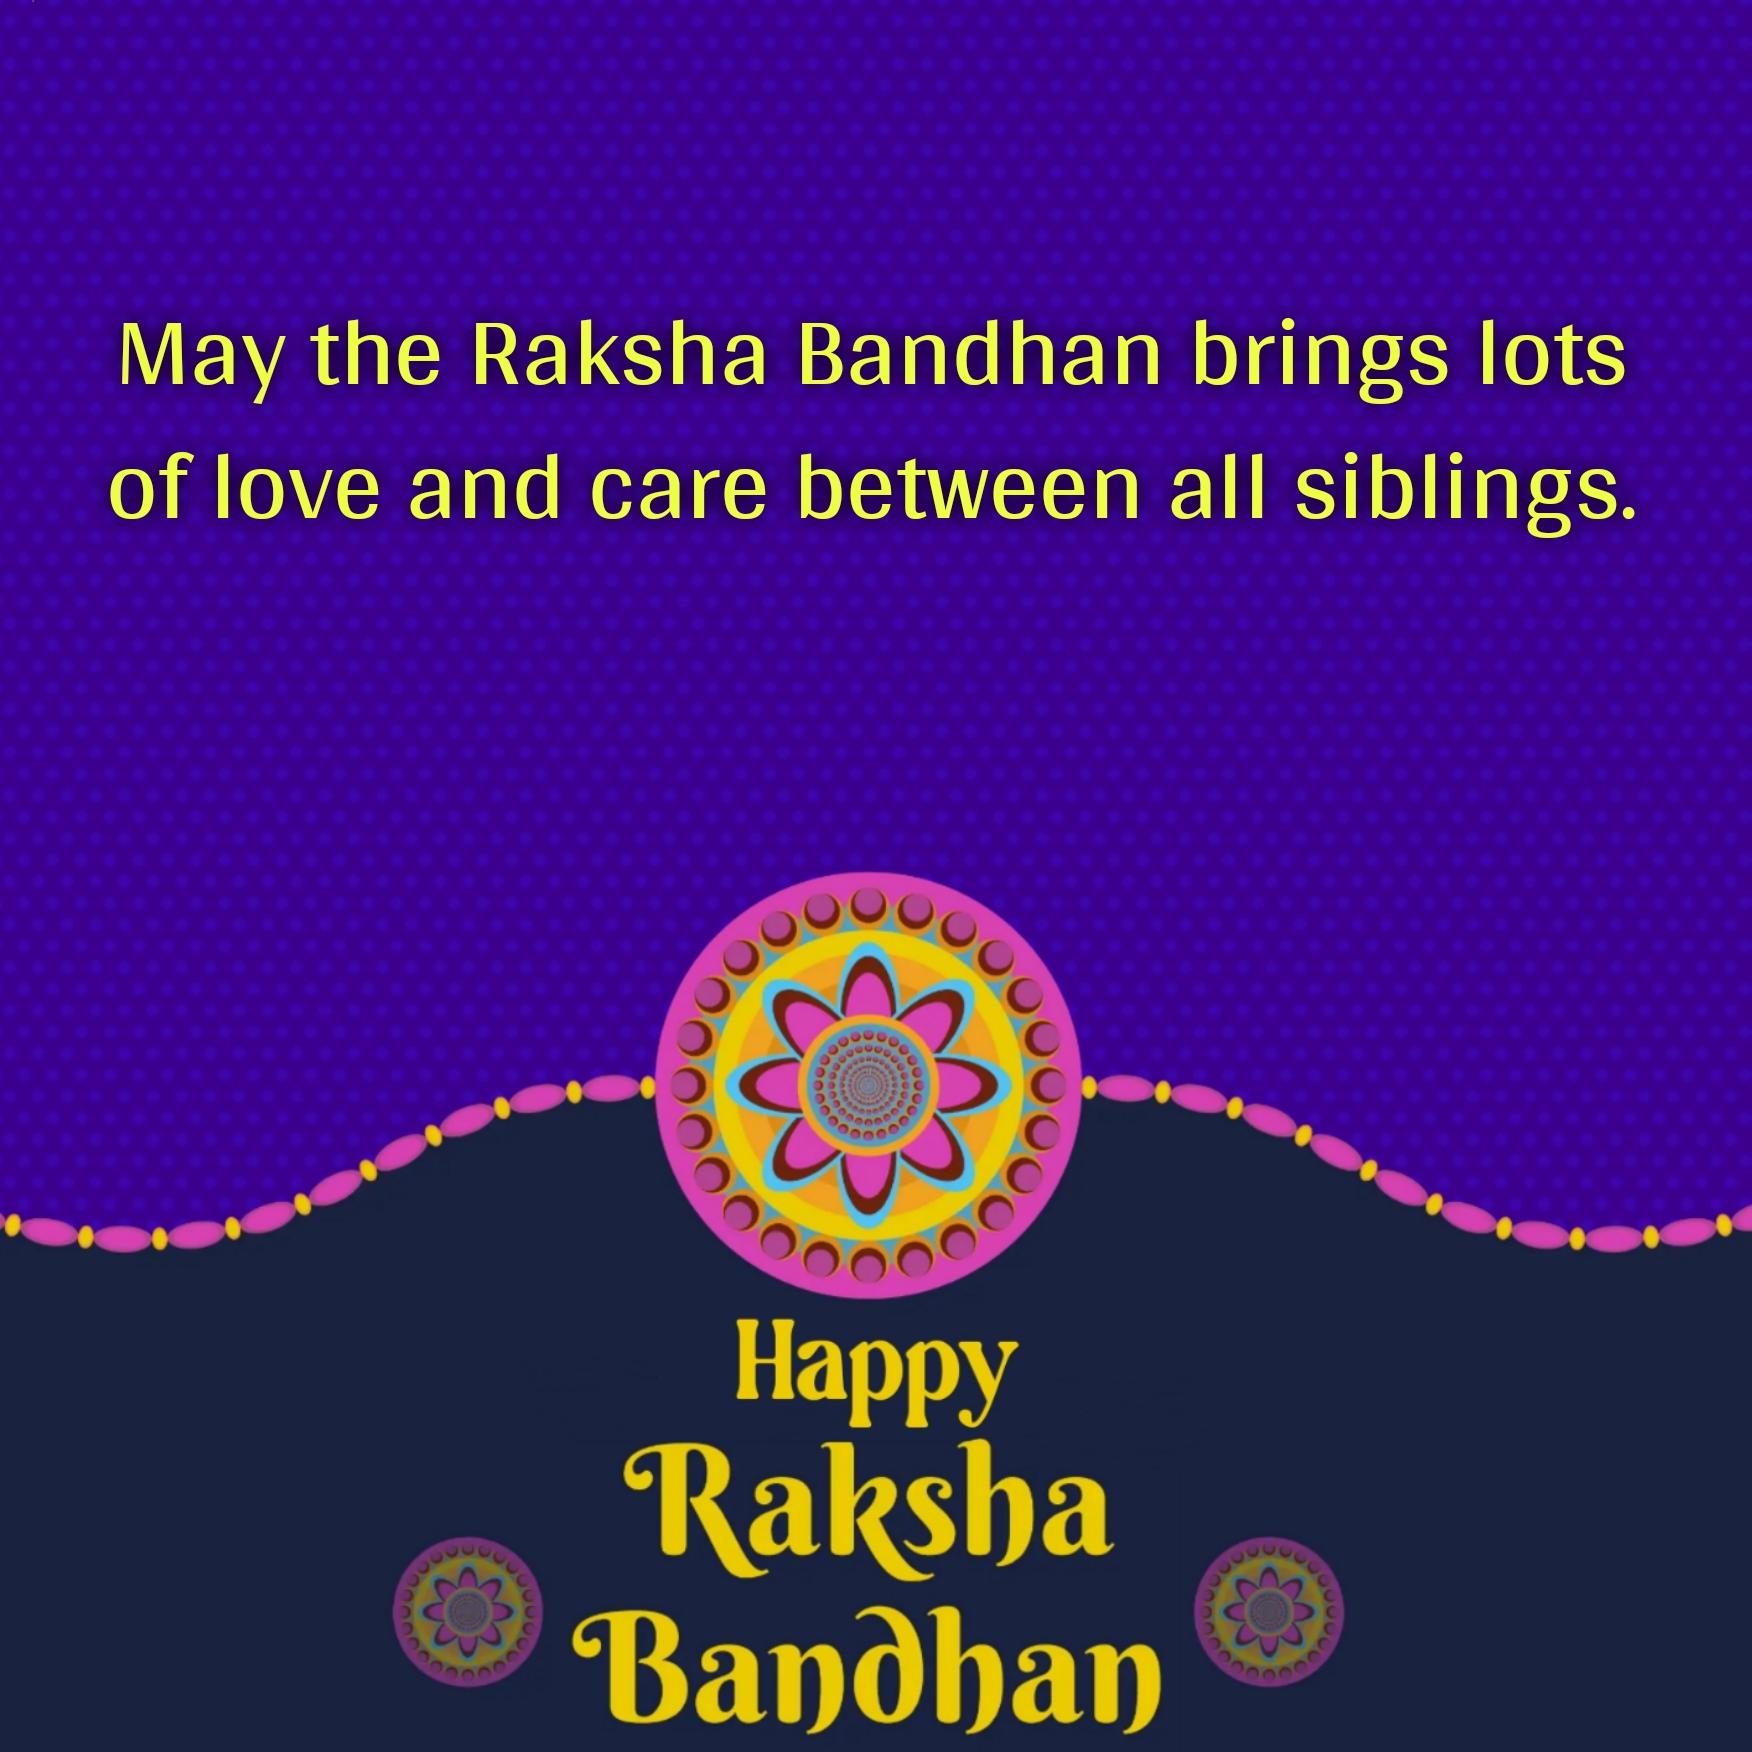 May the Raksha Bandhan brings lots of love and care